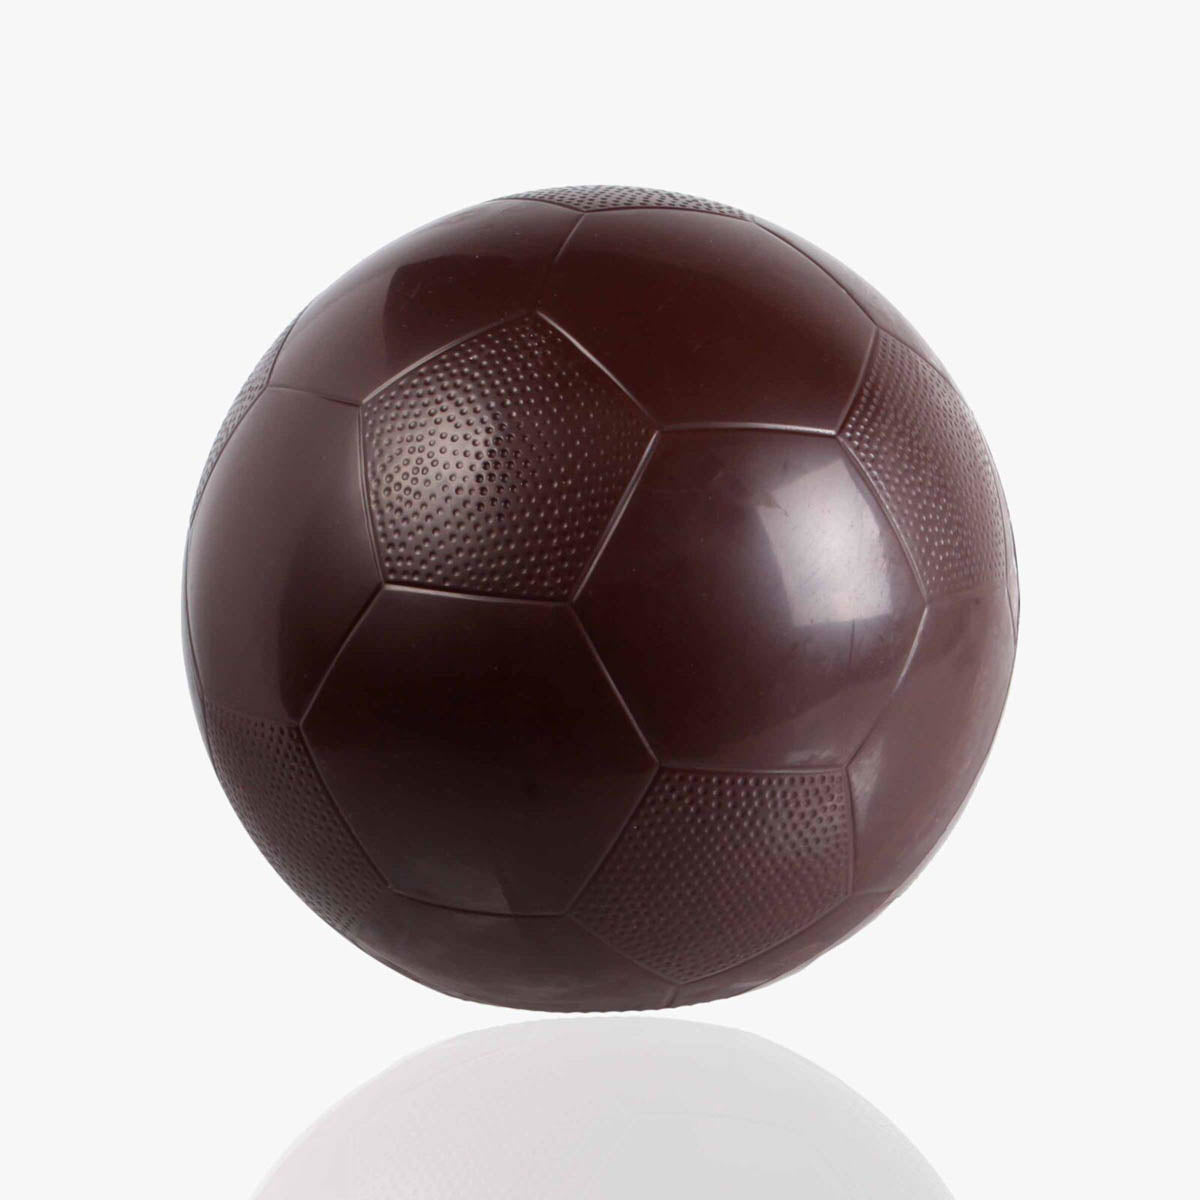 Mona de chocolate de una pelota de fútbol